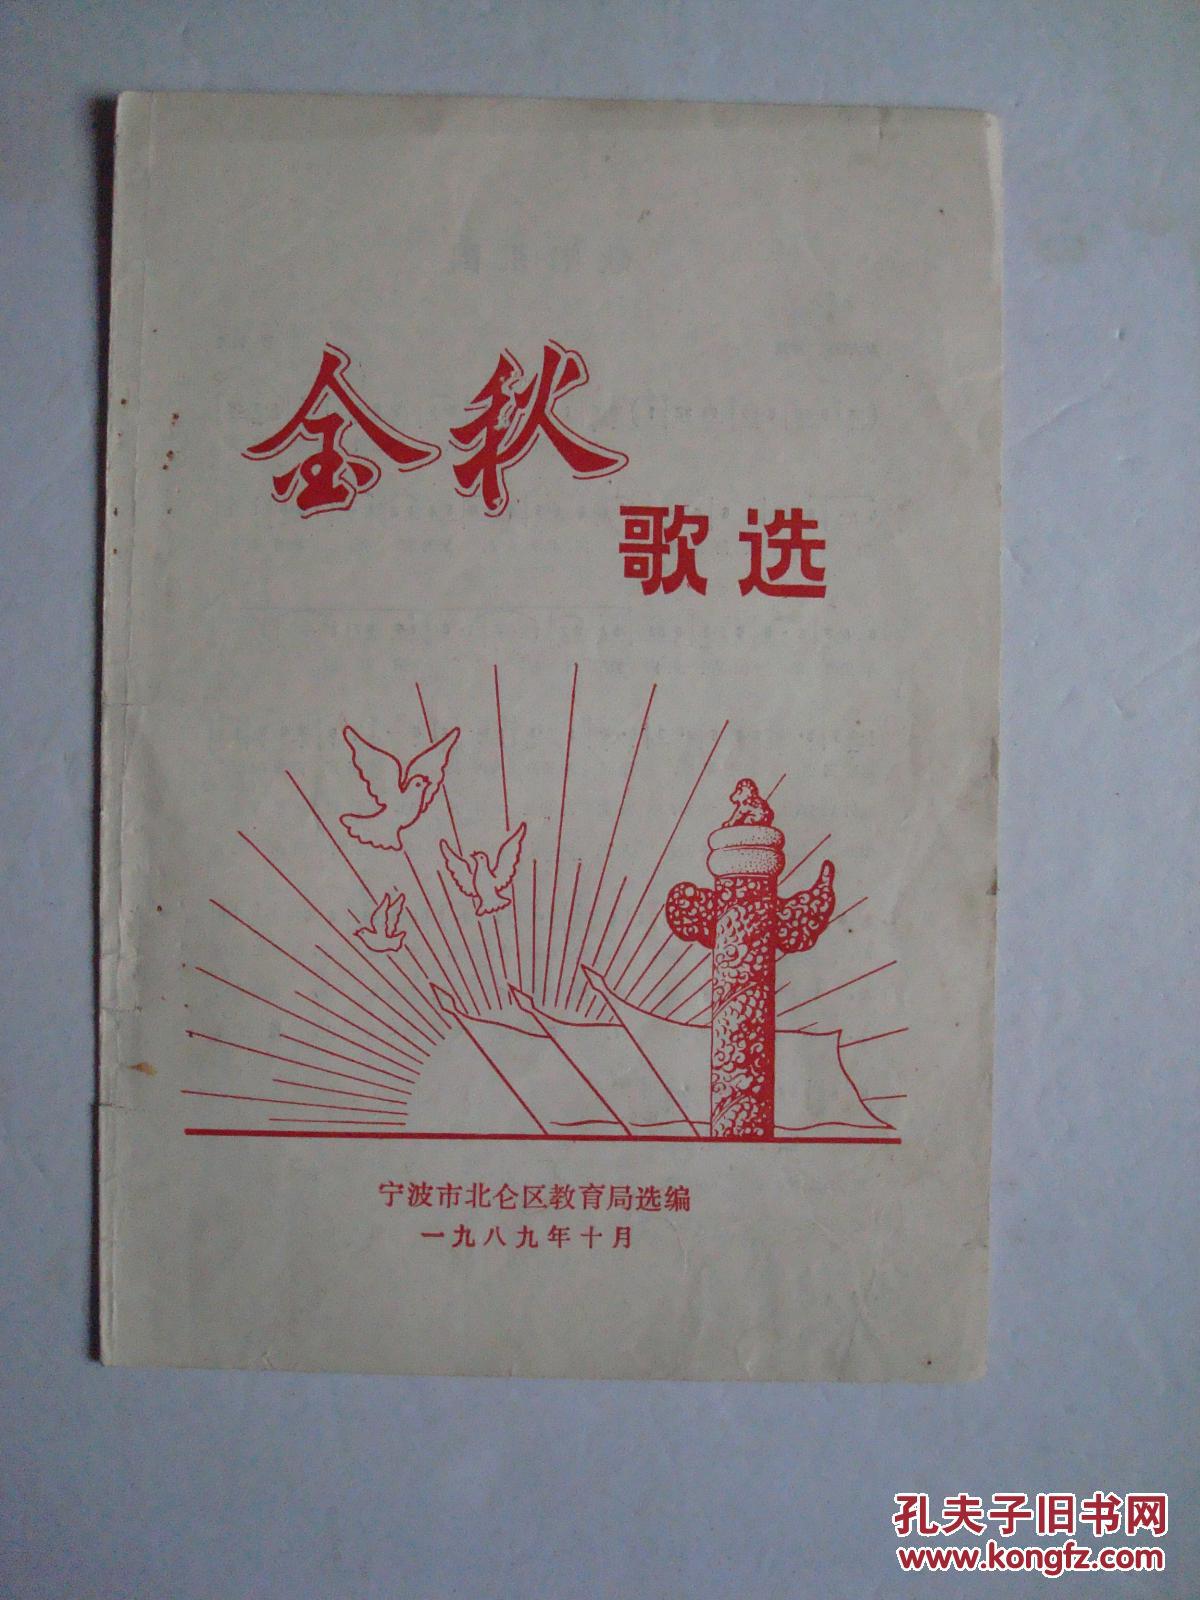 1989年《金秋歌选》(宁波市北仑区教育局选编